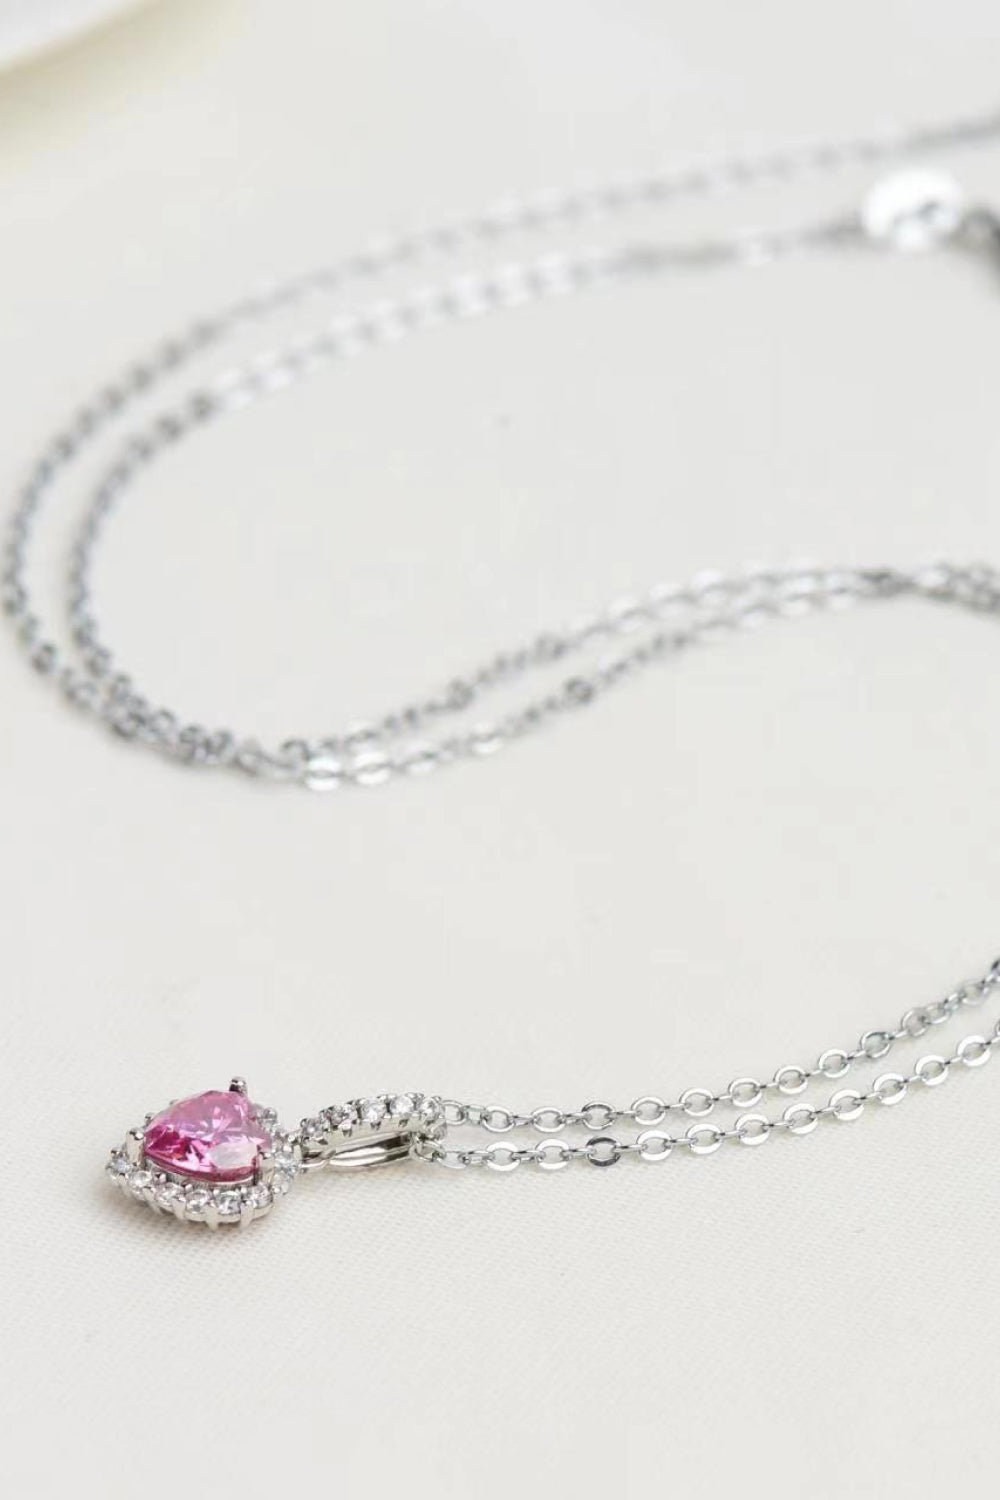 1 Carat Moissanite Heart Pendant Necklace - DromedarShop.com Online Boutique